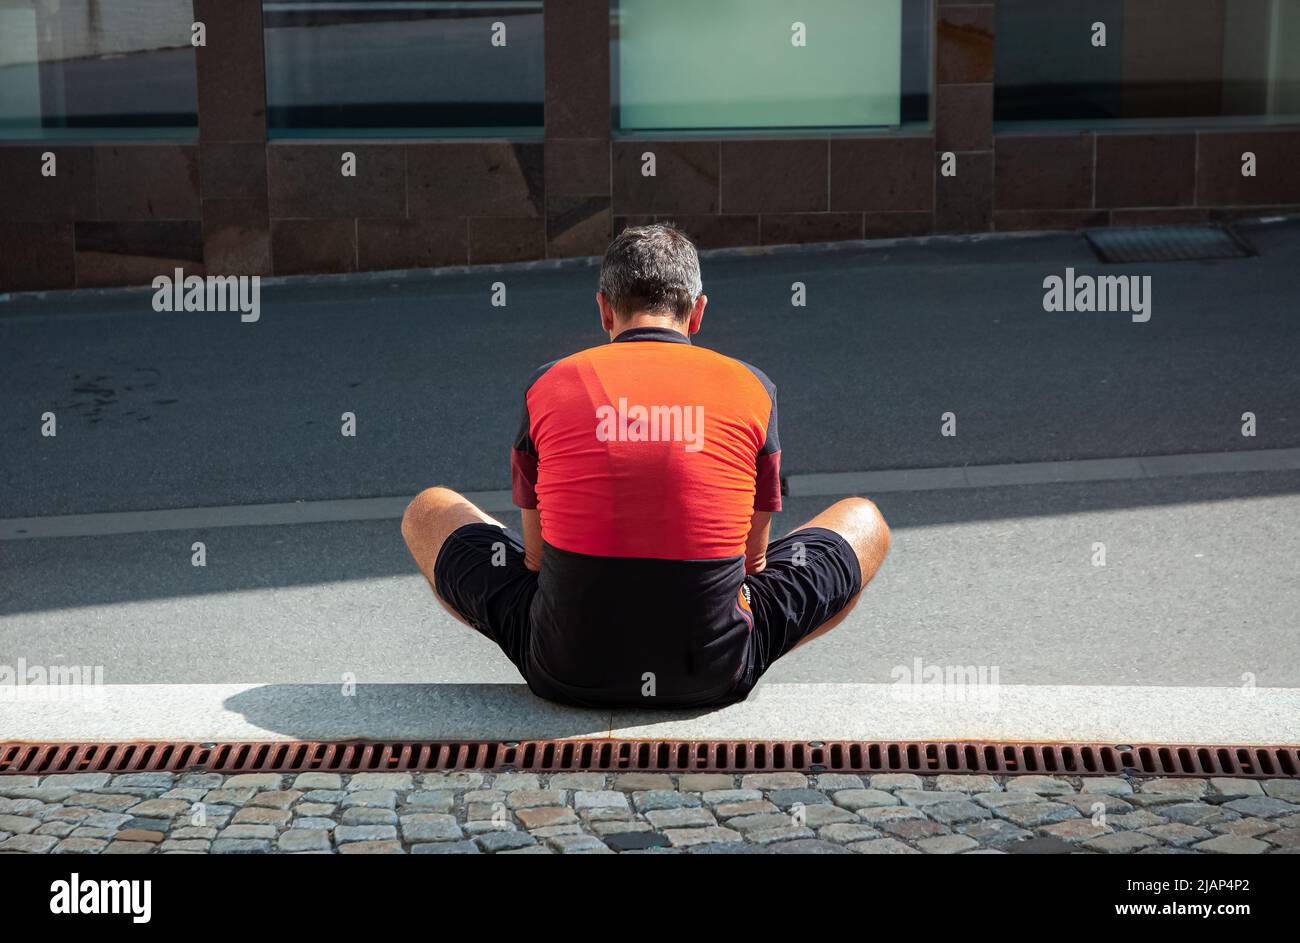 Ein einsamer Mann in einem orange-schwarzen Radtrikot sitzt an einem sonnigen Tag auf dem Boden Stockfoto